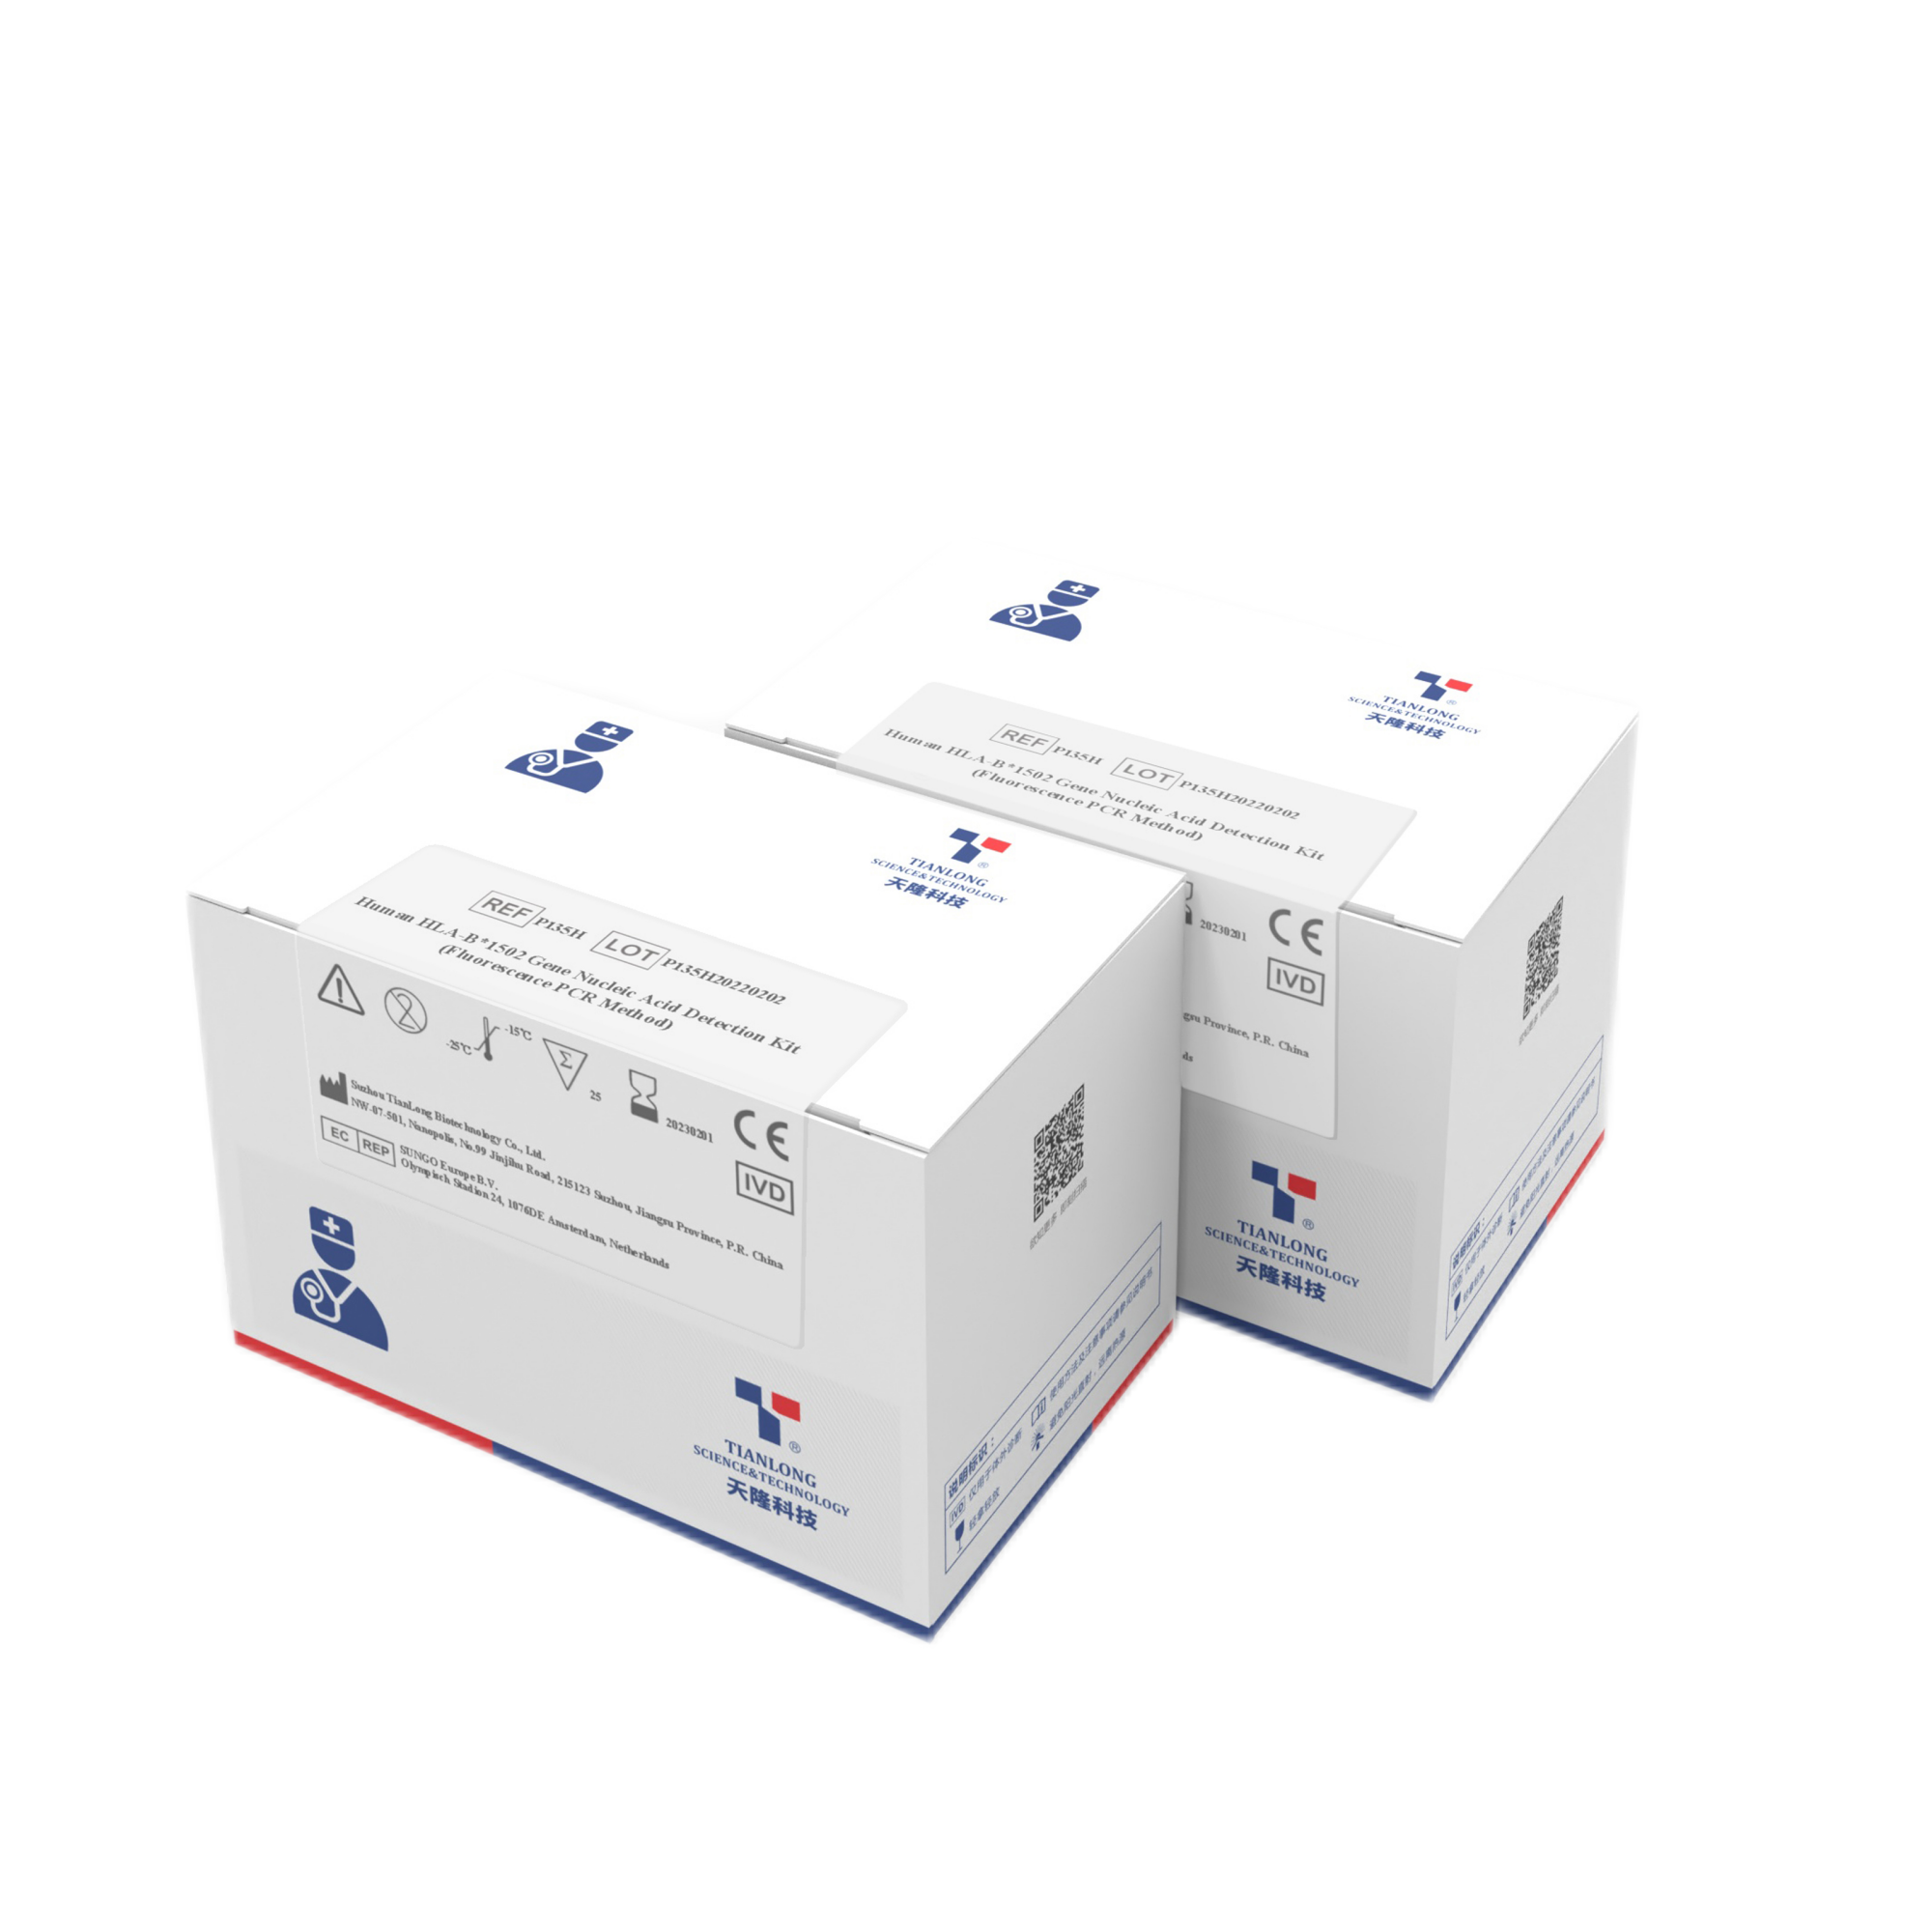 P135H - Human Leukocyte Antigen Nucleic Acid Detection Kit